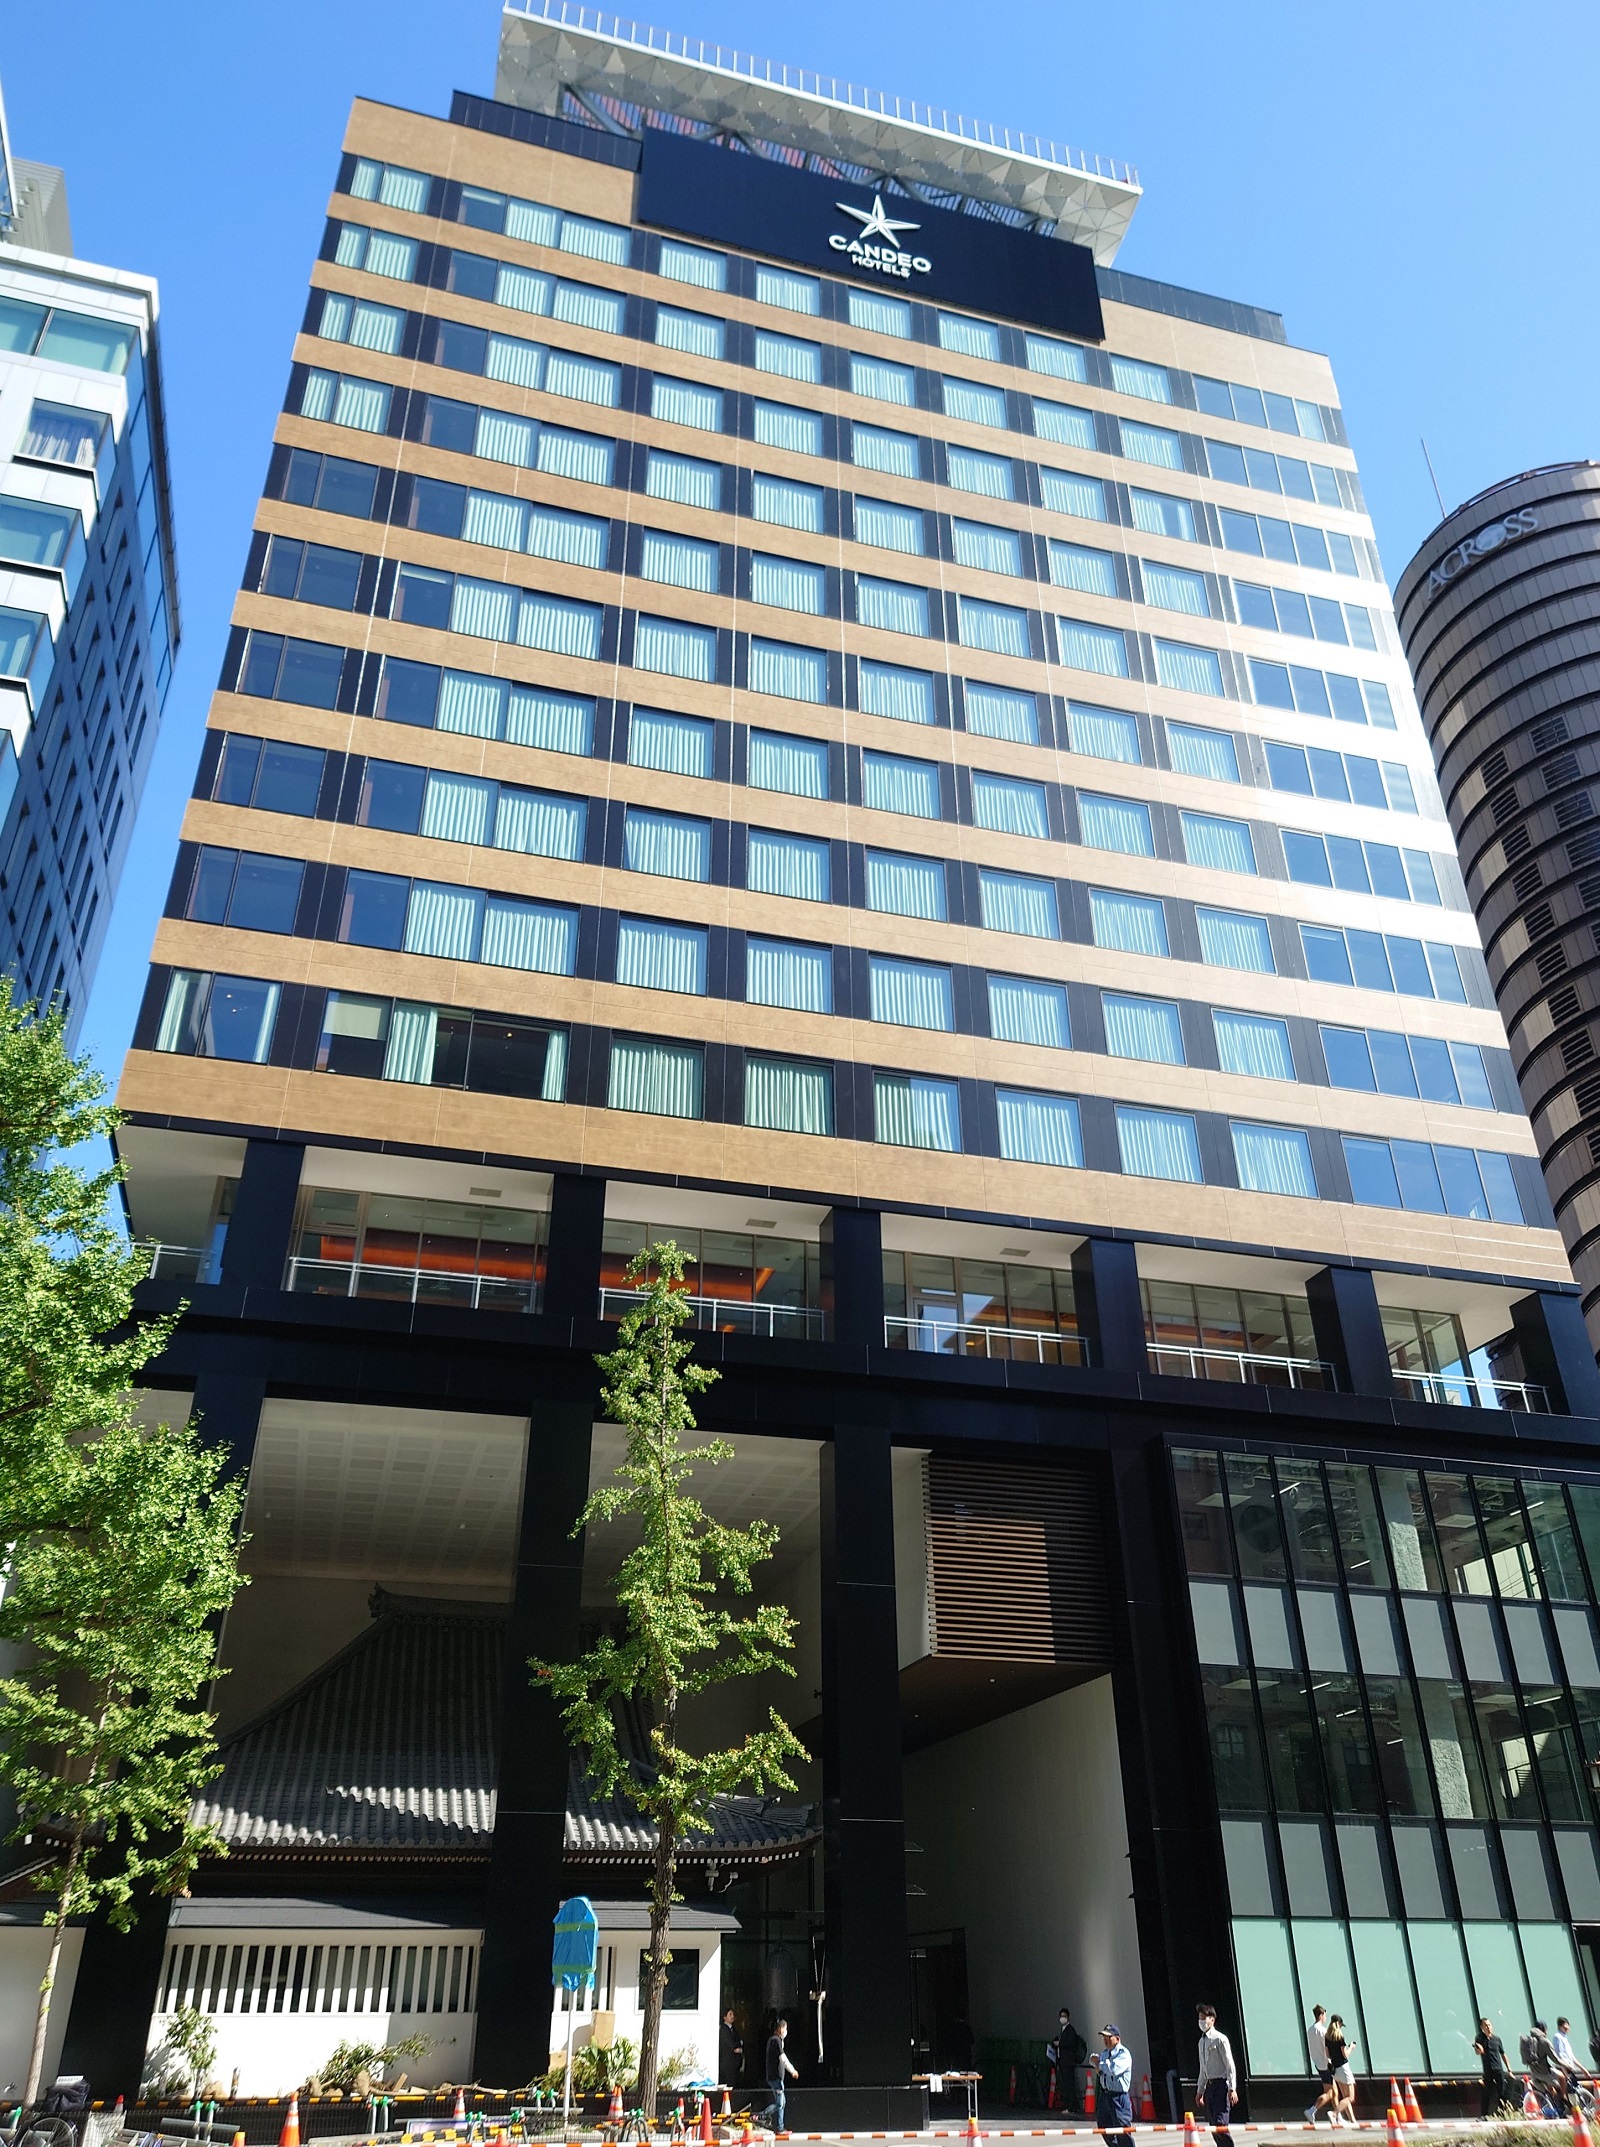 施設の低層部に寺院を配置した新築の高層ビル「東京建物三津寺ビルディング」。上層部にはホテル「カンデオホテルズ大阪心斎橋」、寺院がある北側のピロティの隣には商業施設が入る（写真：日経クロステック）